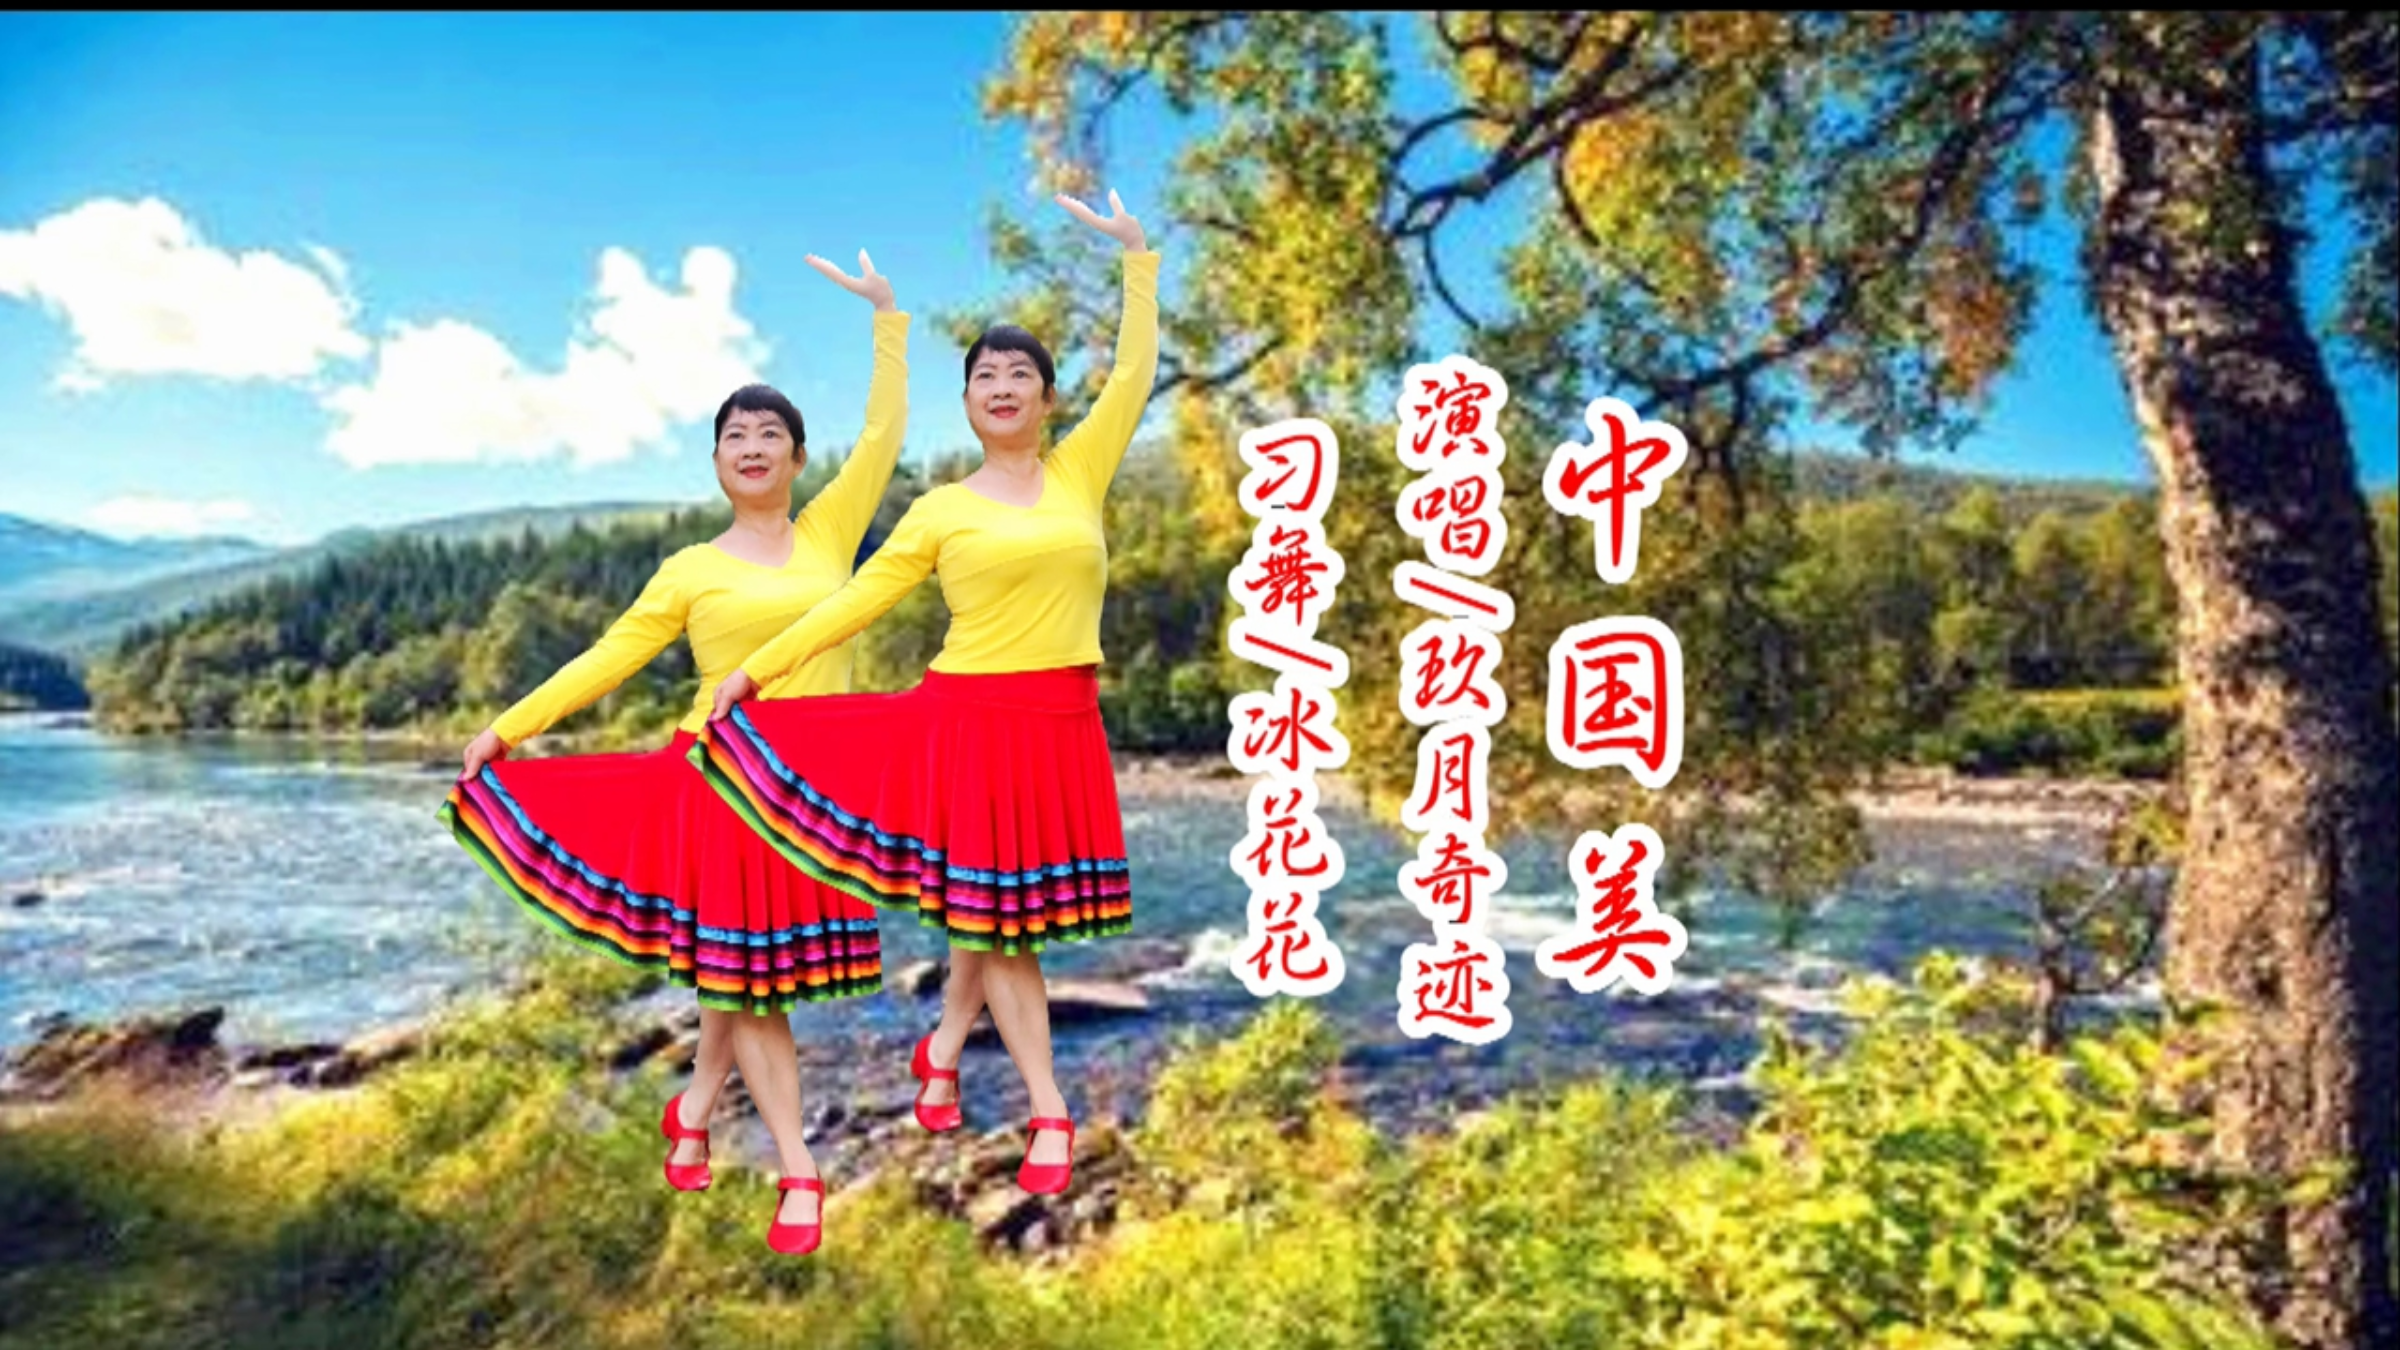 新年最嗨舞蹈《中国美》玖月奇迹激情歌声赞美祖国如画江山